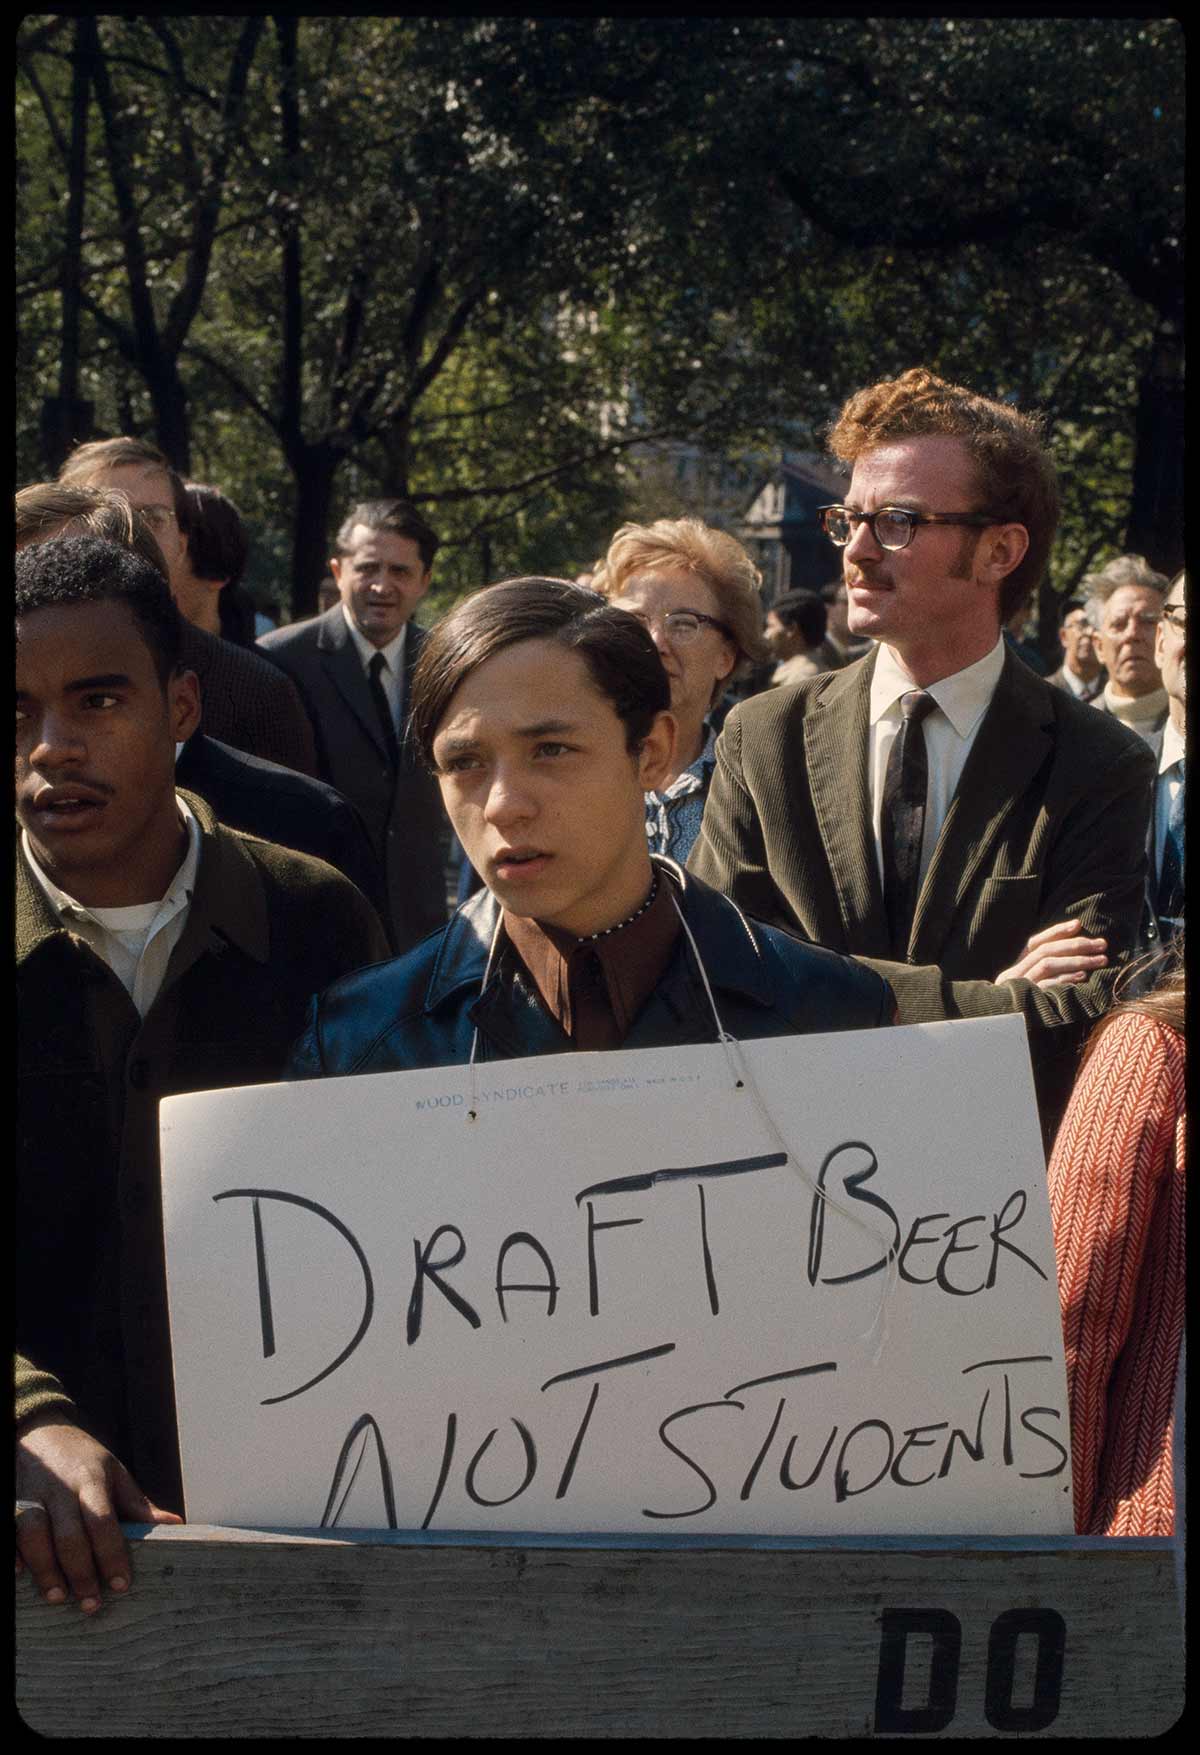 Vietnam Moratorium, NYC | October 1969 | Bernard Gotfryd | Retrieved from the Library of Congress